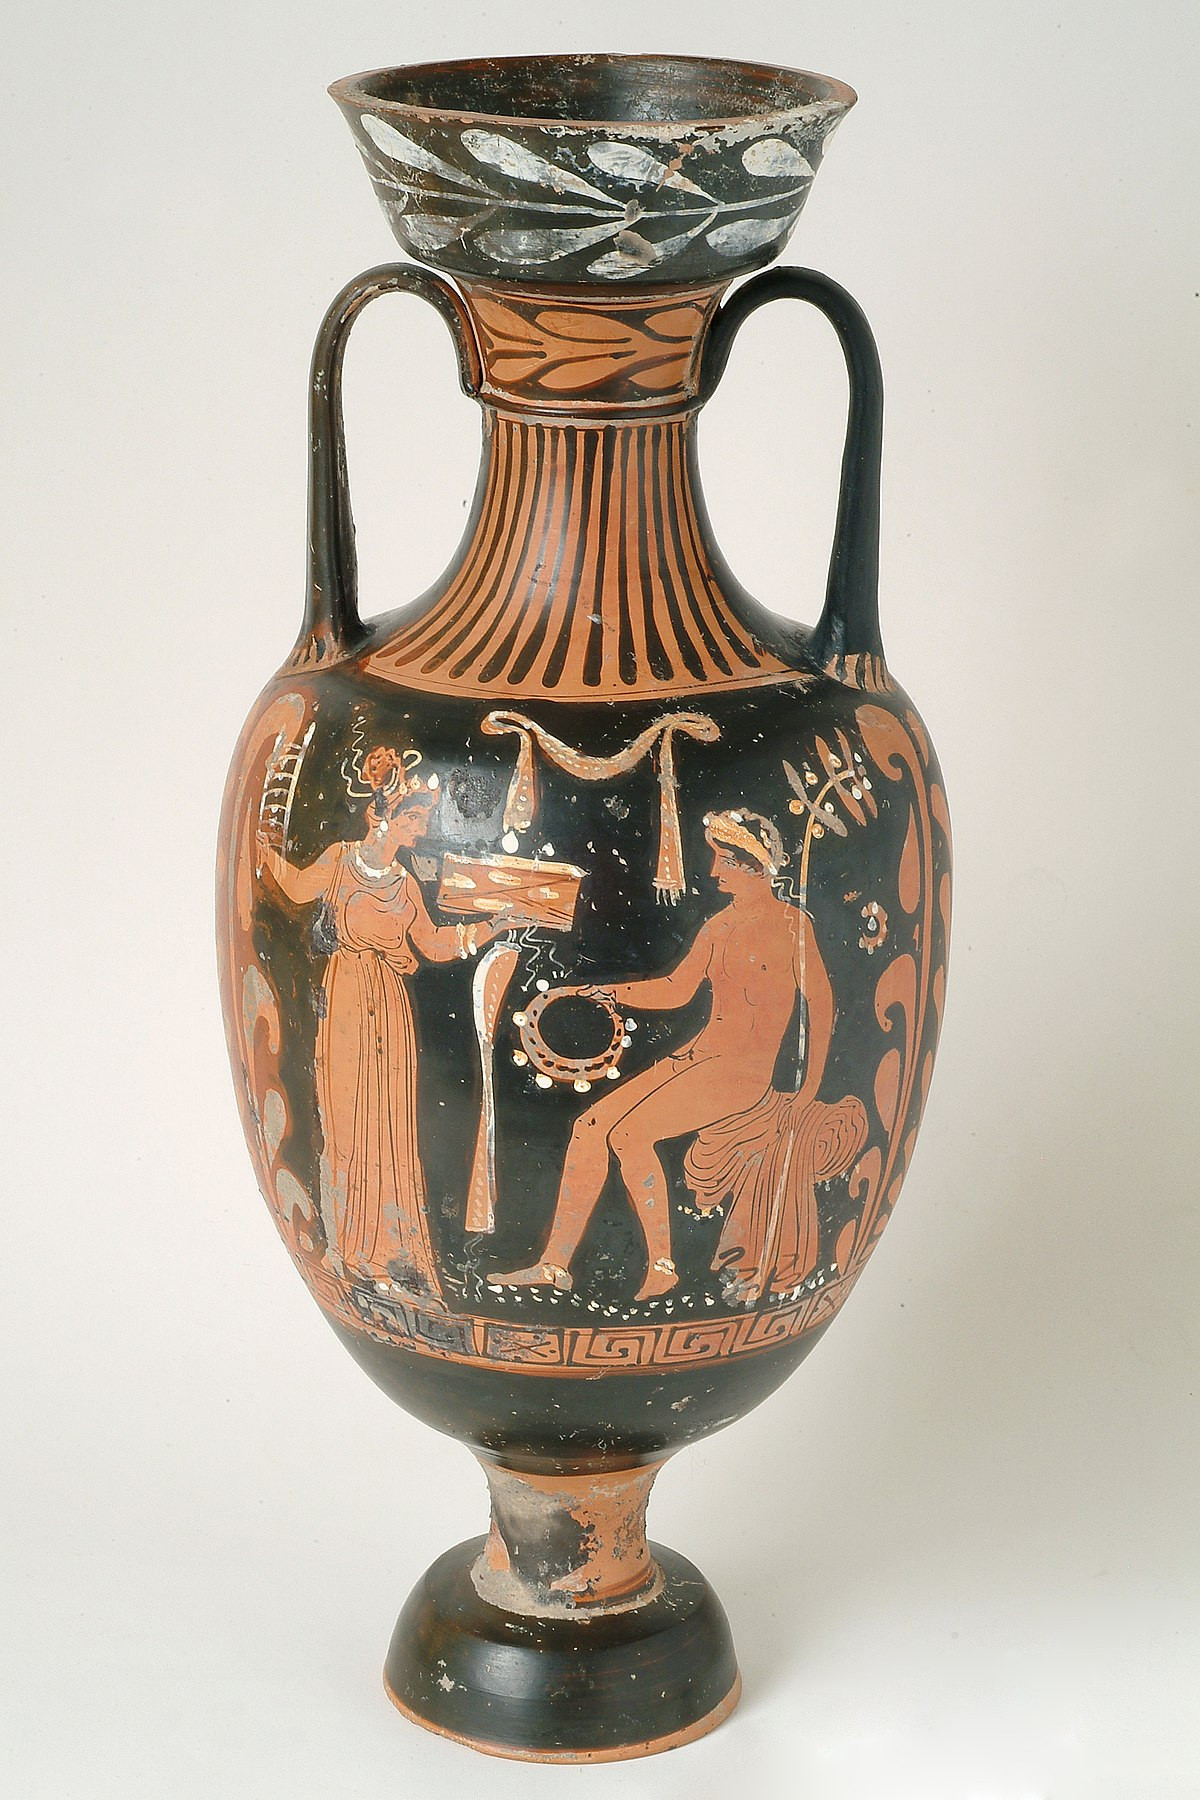 14 Popular Antique Porcelain Vases 2022 free download antique porcelain vases of q29966310 wikidata in 1200px msr 93 1 2 mv a